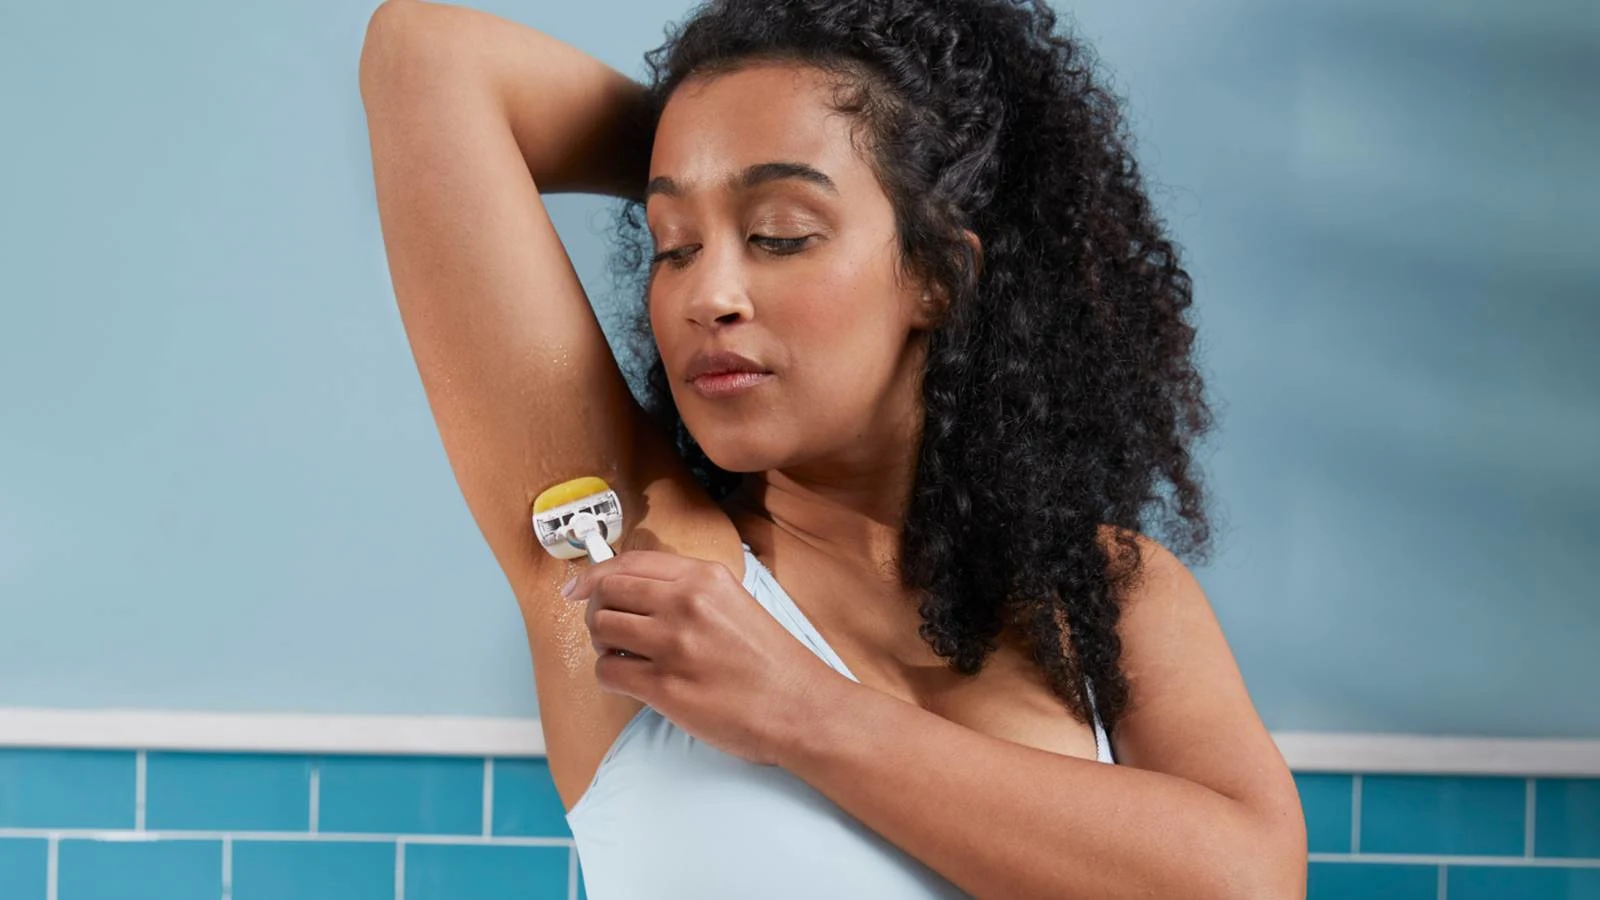 Kvinna som rakar hennes armhåla med Venus rakhyvel